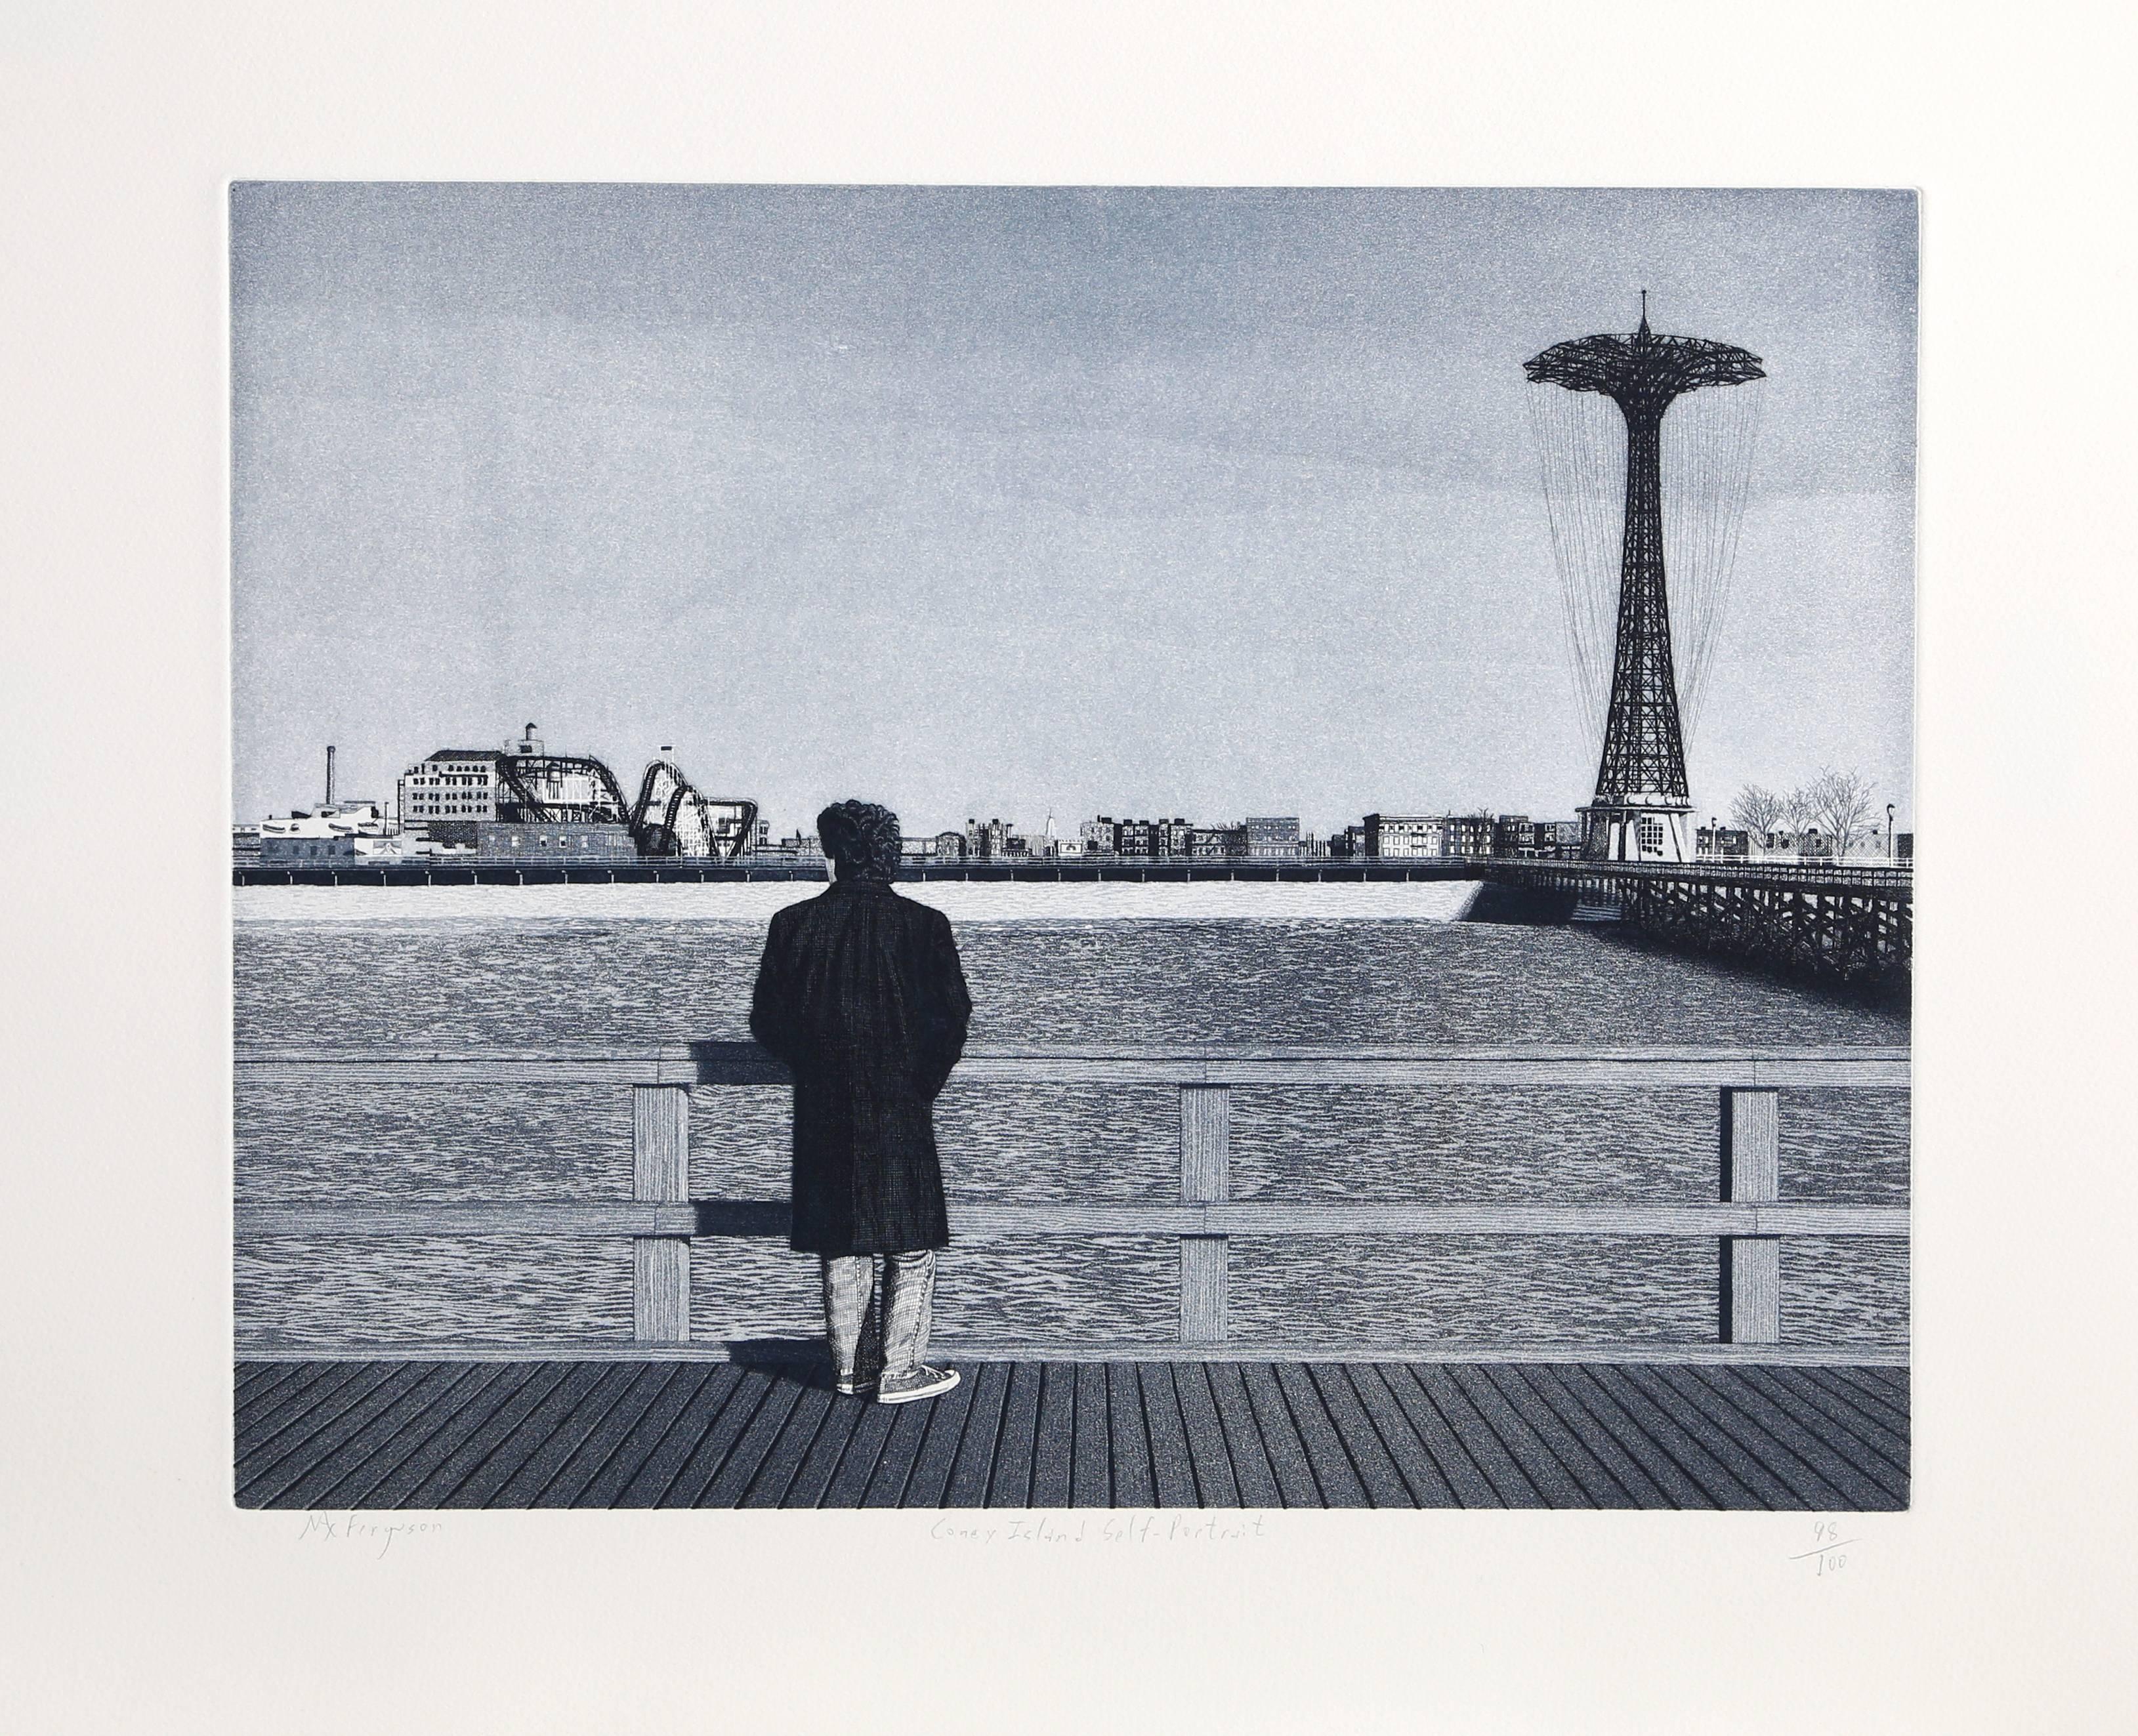 Künstler: Max Ferguson, Amerikaner (1959 - )
Titel: Coney Island - Selbstporträt
Medium: Radierung mit Aquatinta, mit Bleistift signiert und nummeriert
Auflage: 100
Bildgröße: 14,5 x 18,5 Zoll
Größe: 21 x 27 Zoll (53,34 x 68,58 cm)